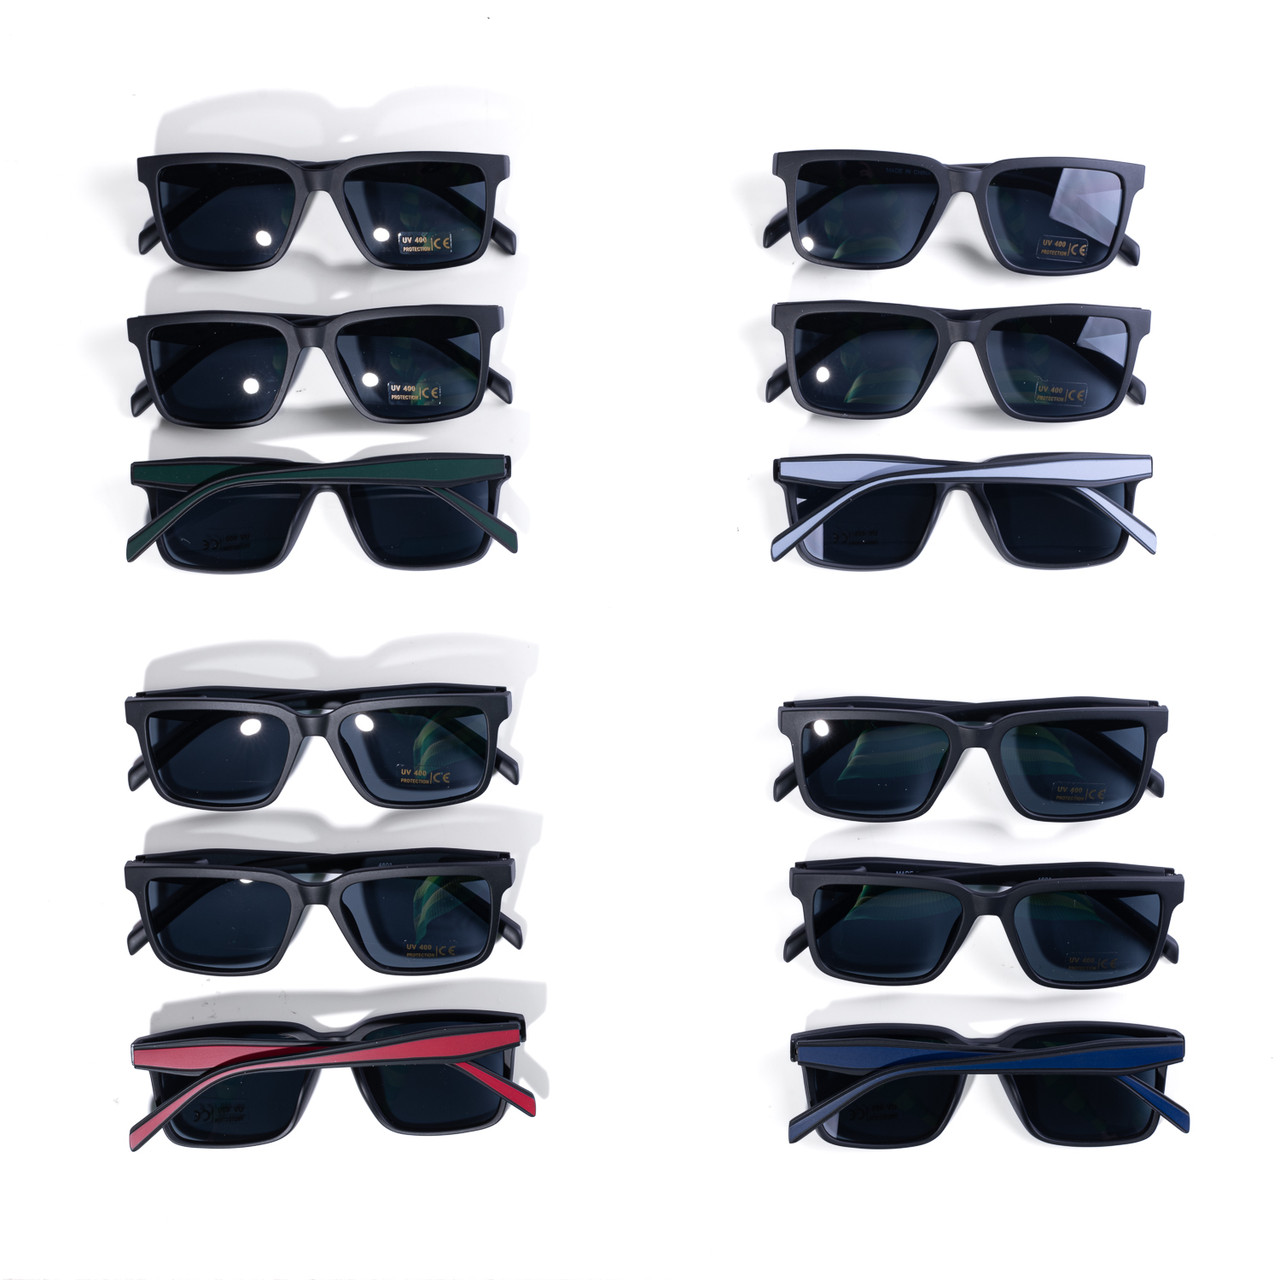 Discover Vibrant Style: Multicolored Wayfarer Sunglasses